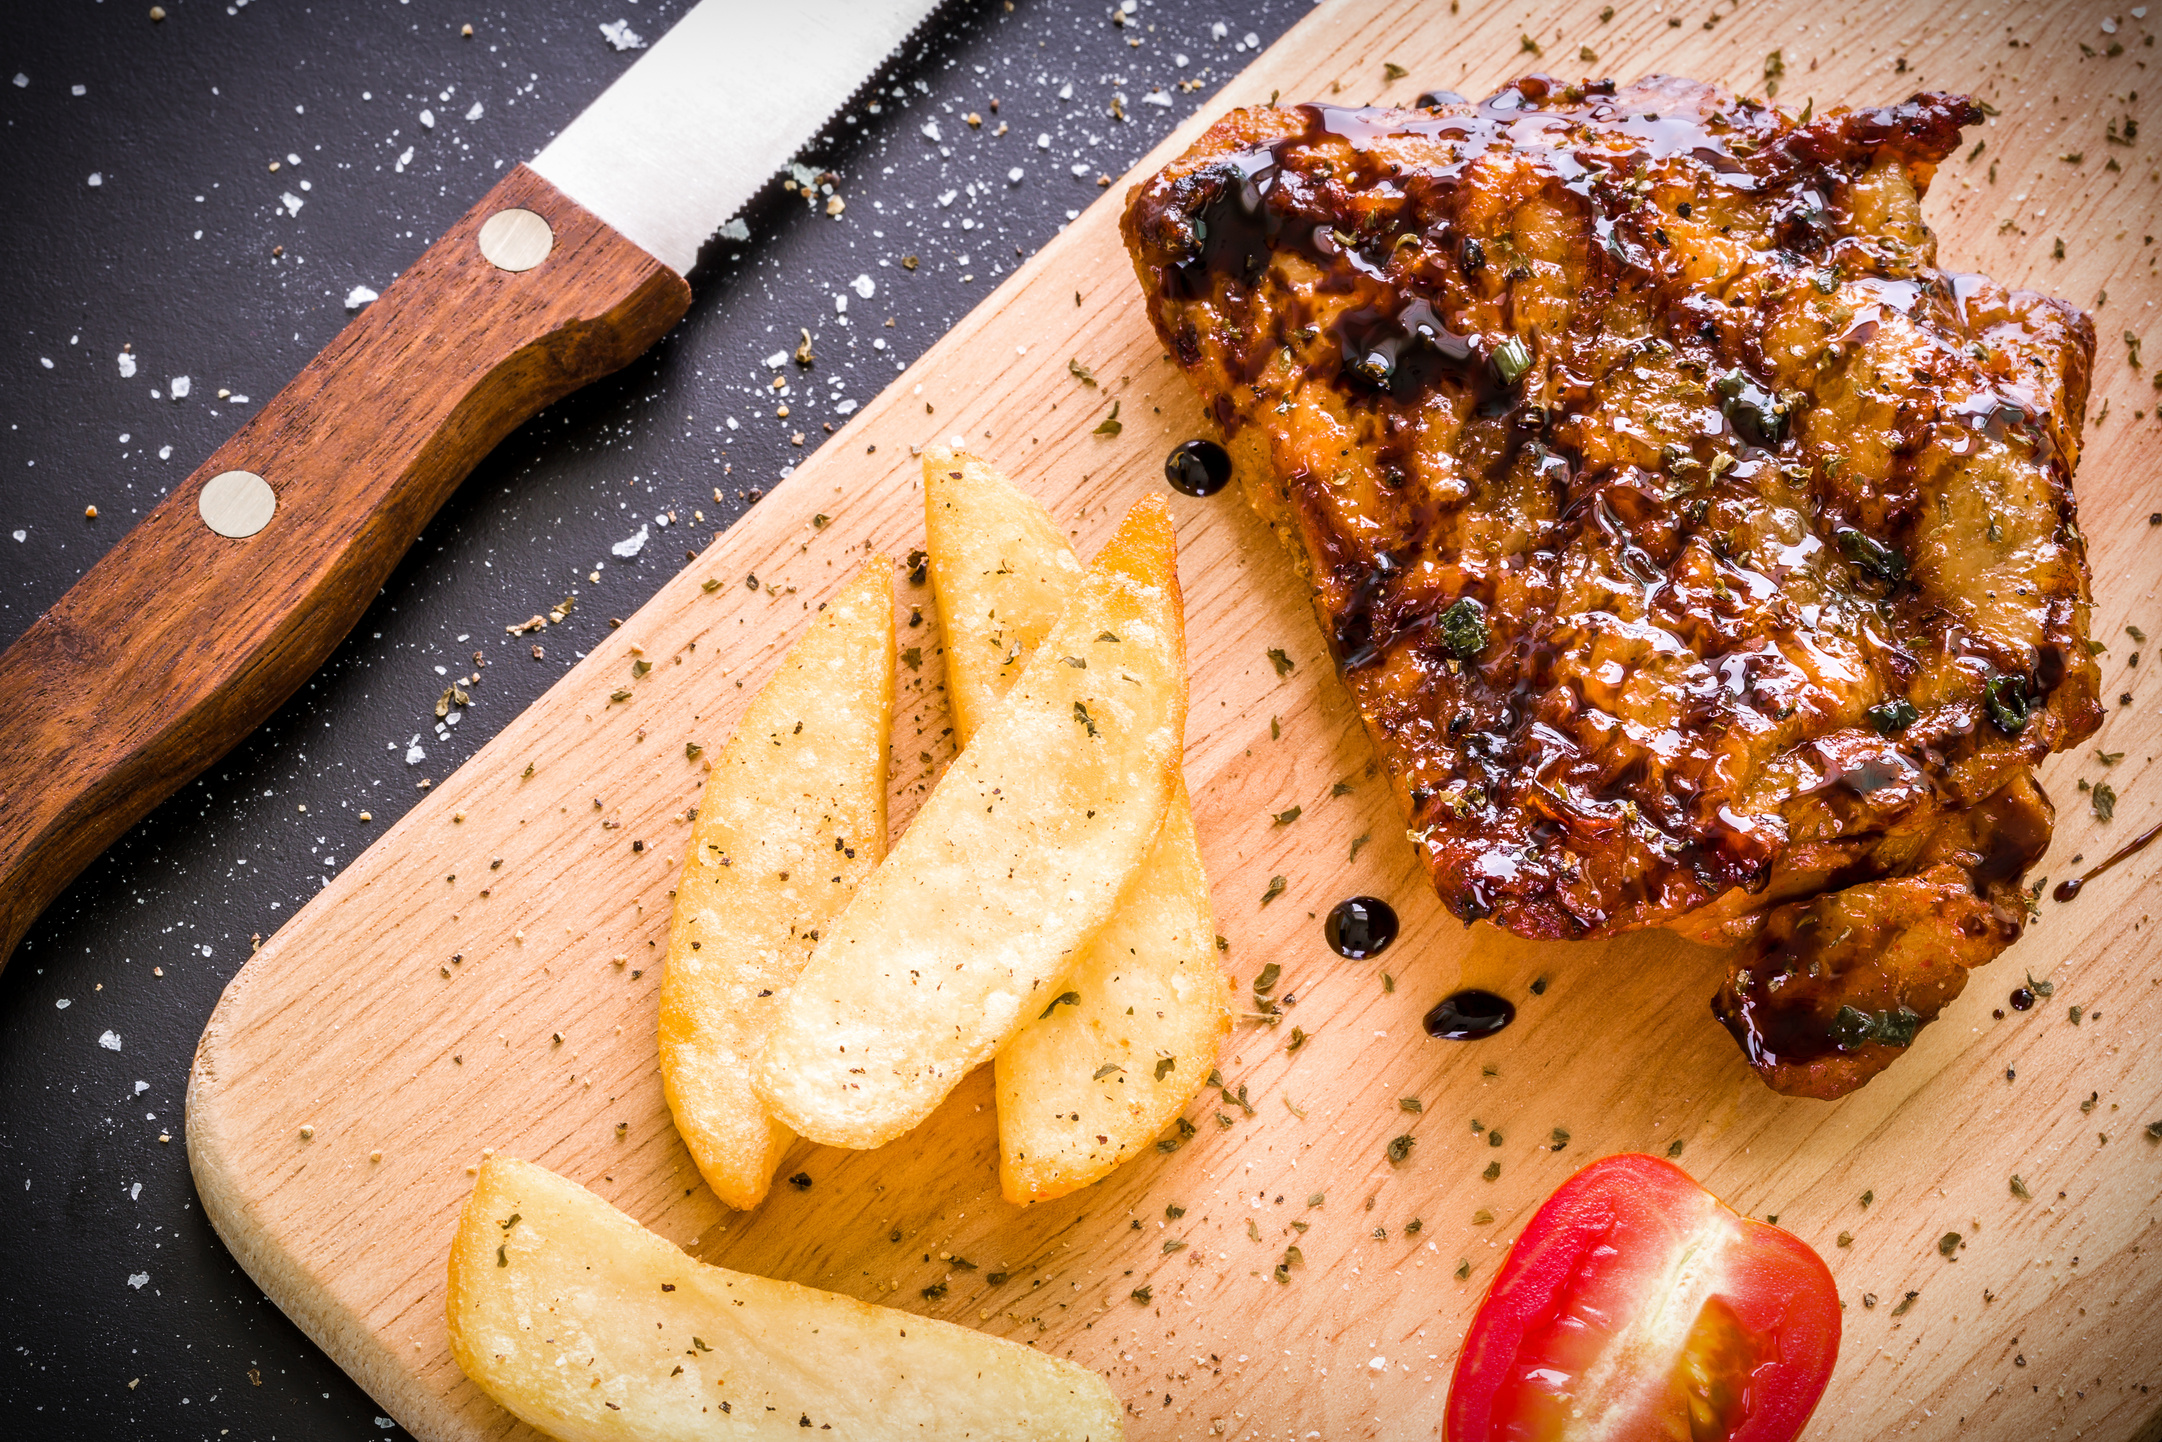 Chicken Steak on Wood / Chicken Steak